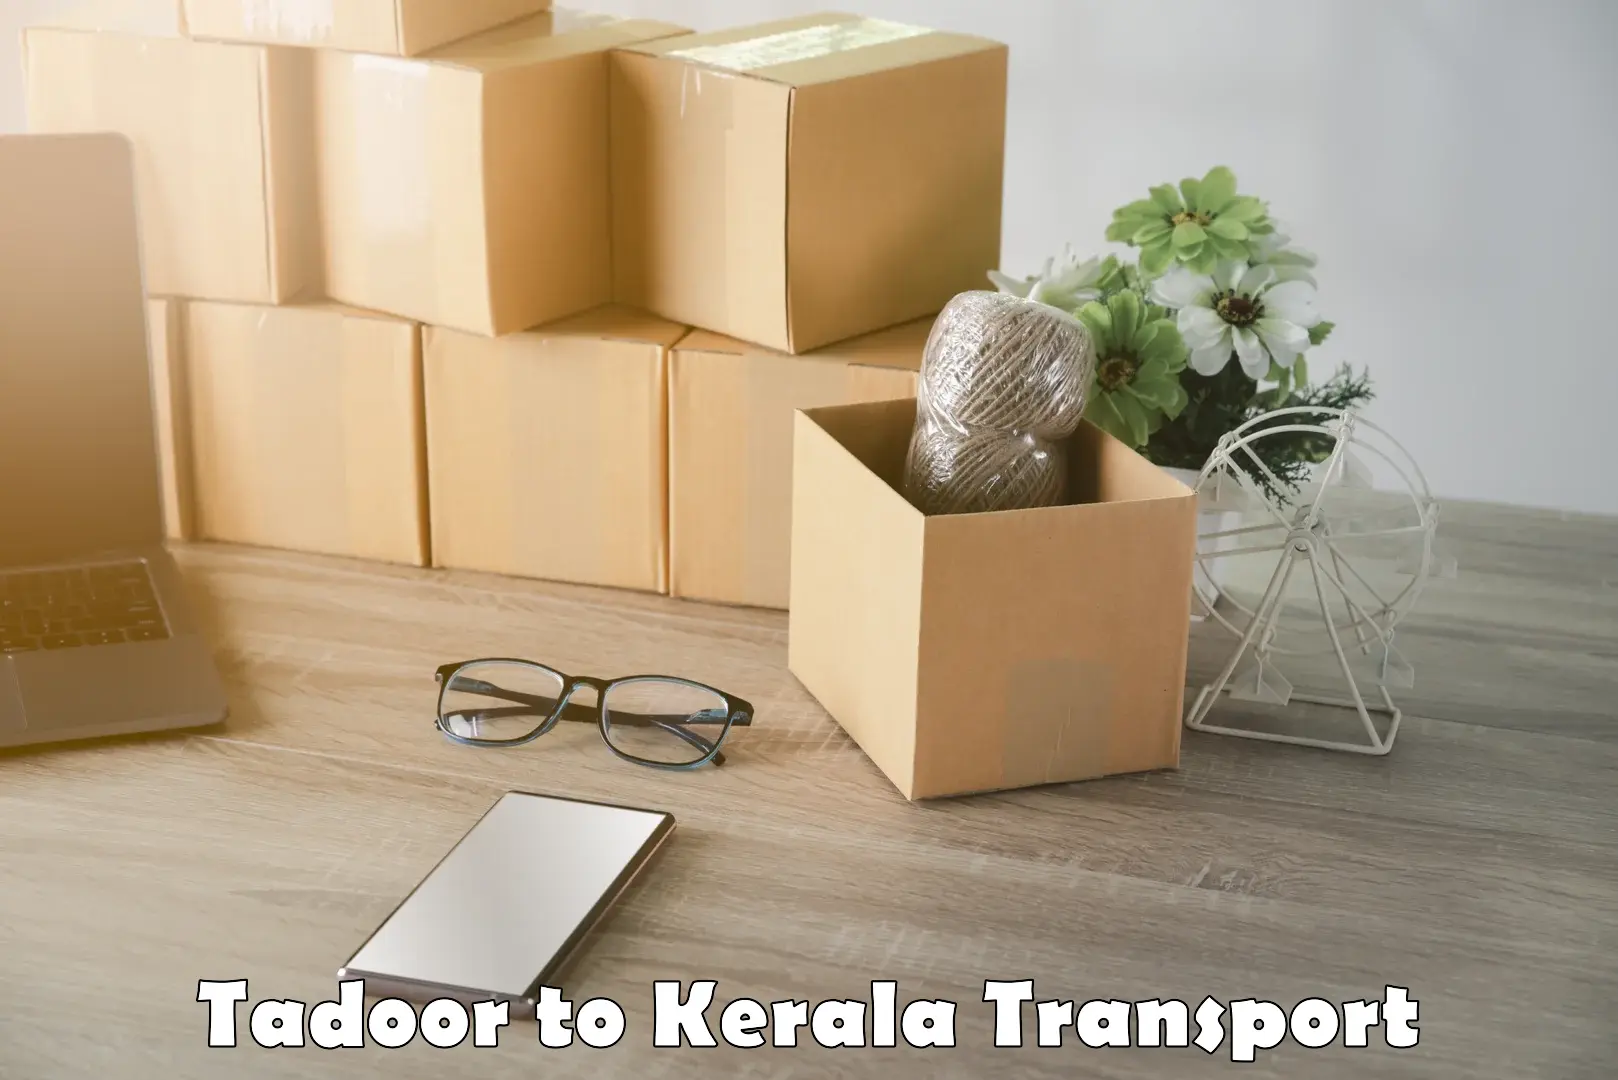 Transport in sharing in Tadoor to Thachanattukara